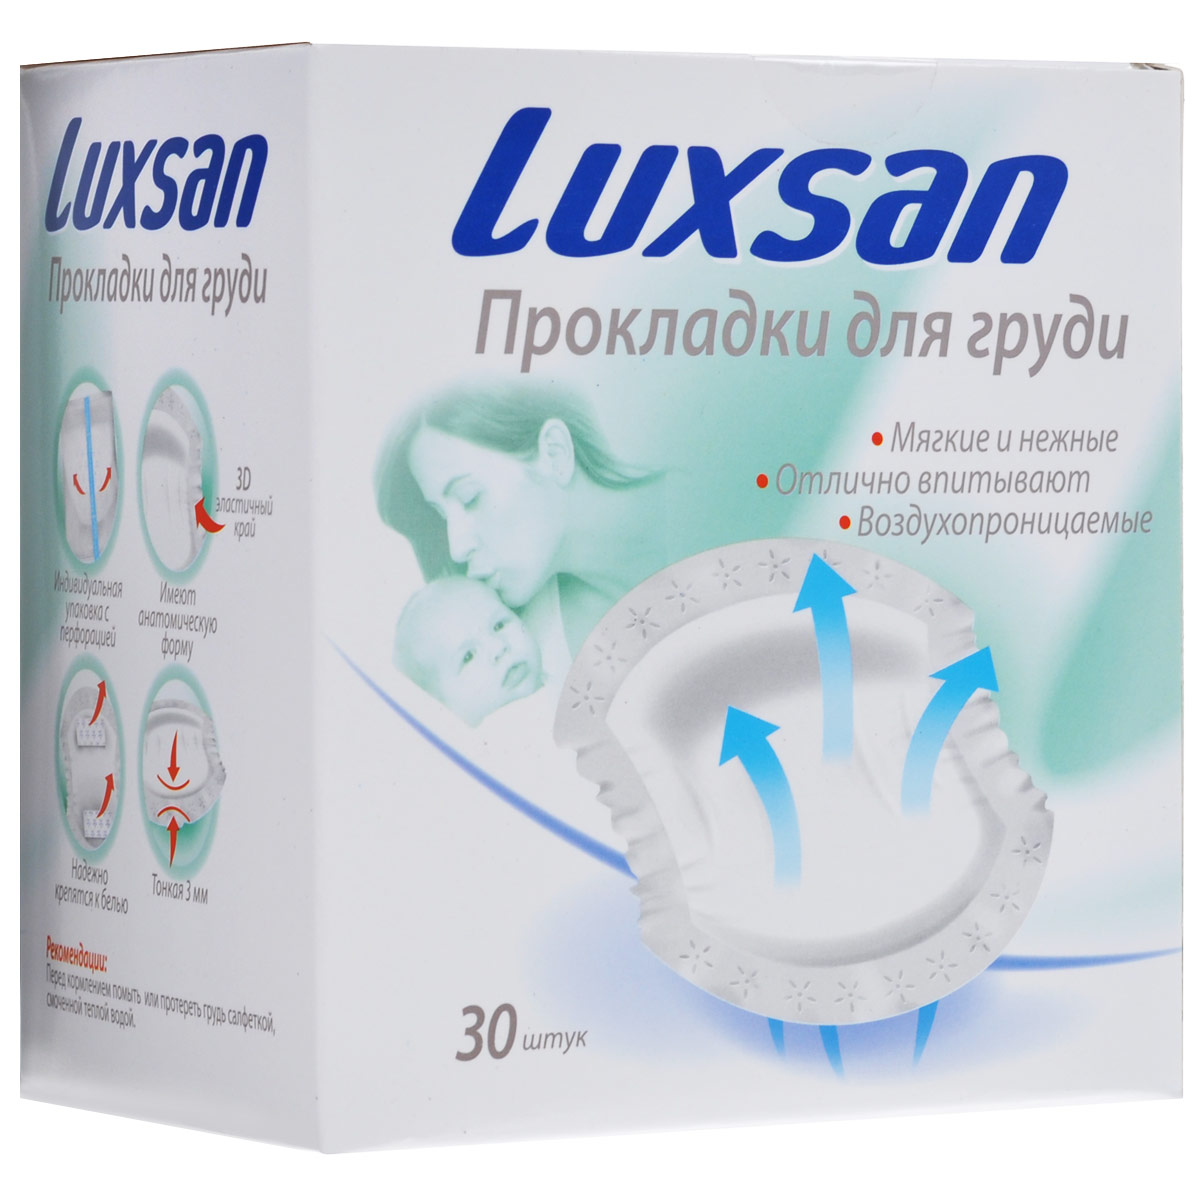 Luxsan Прокладки для груди, анатомические, 30 шт